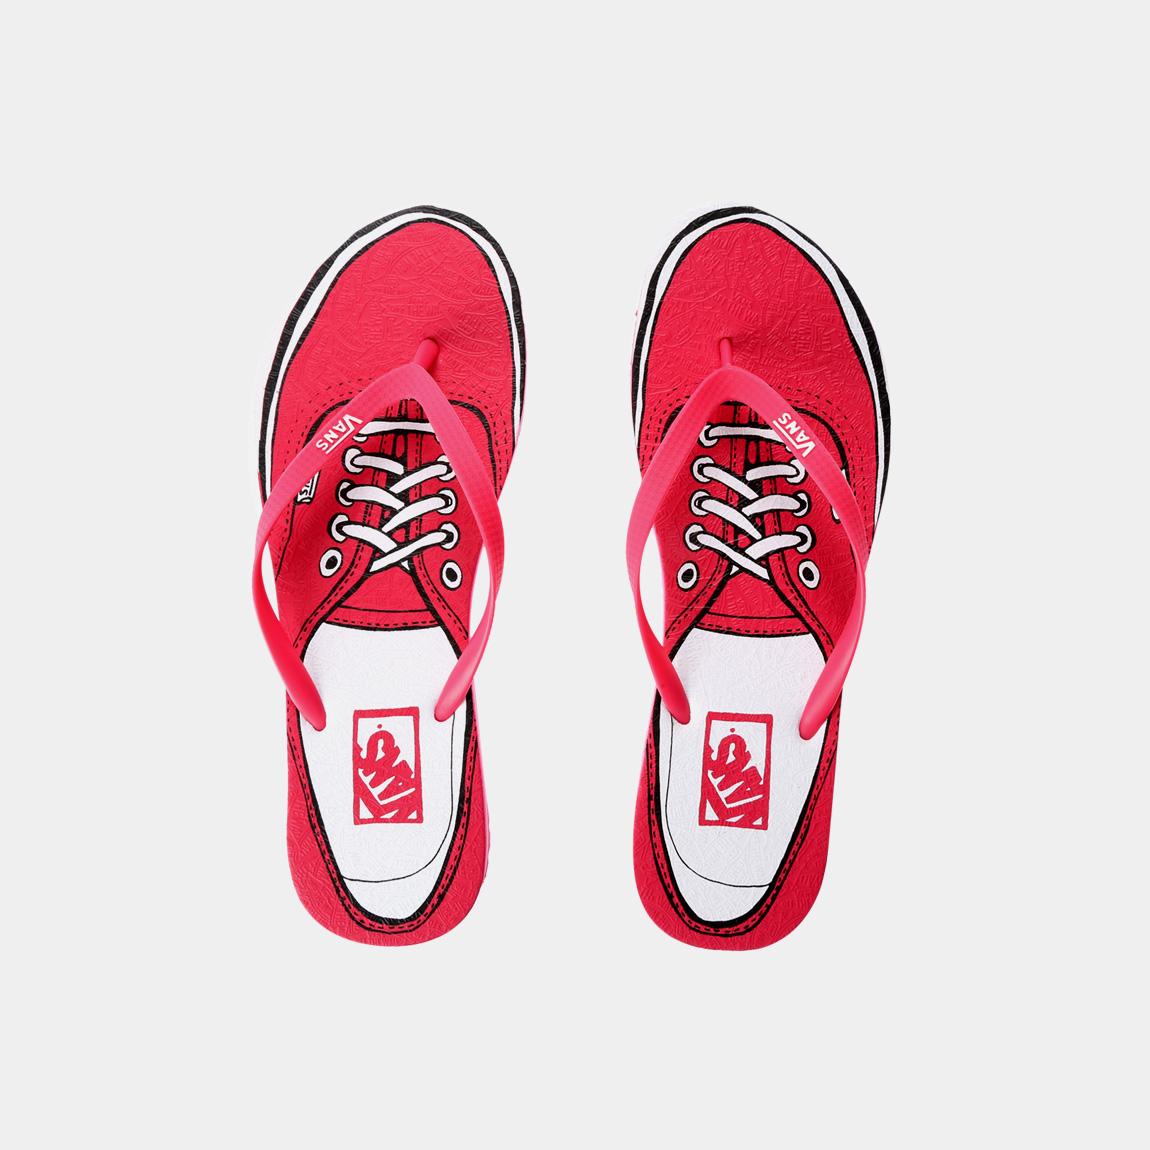 Lanai – Pink Vans Sandals \u0026 Flip Flops 